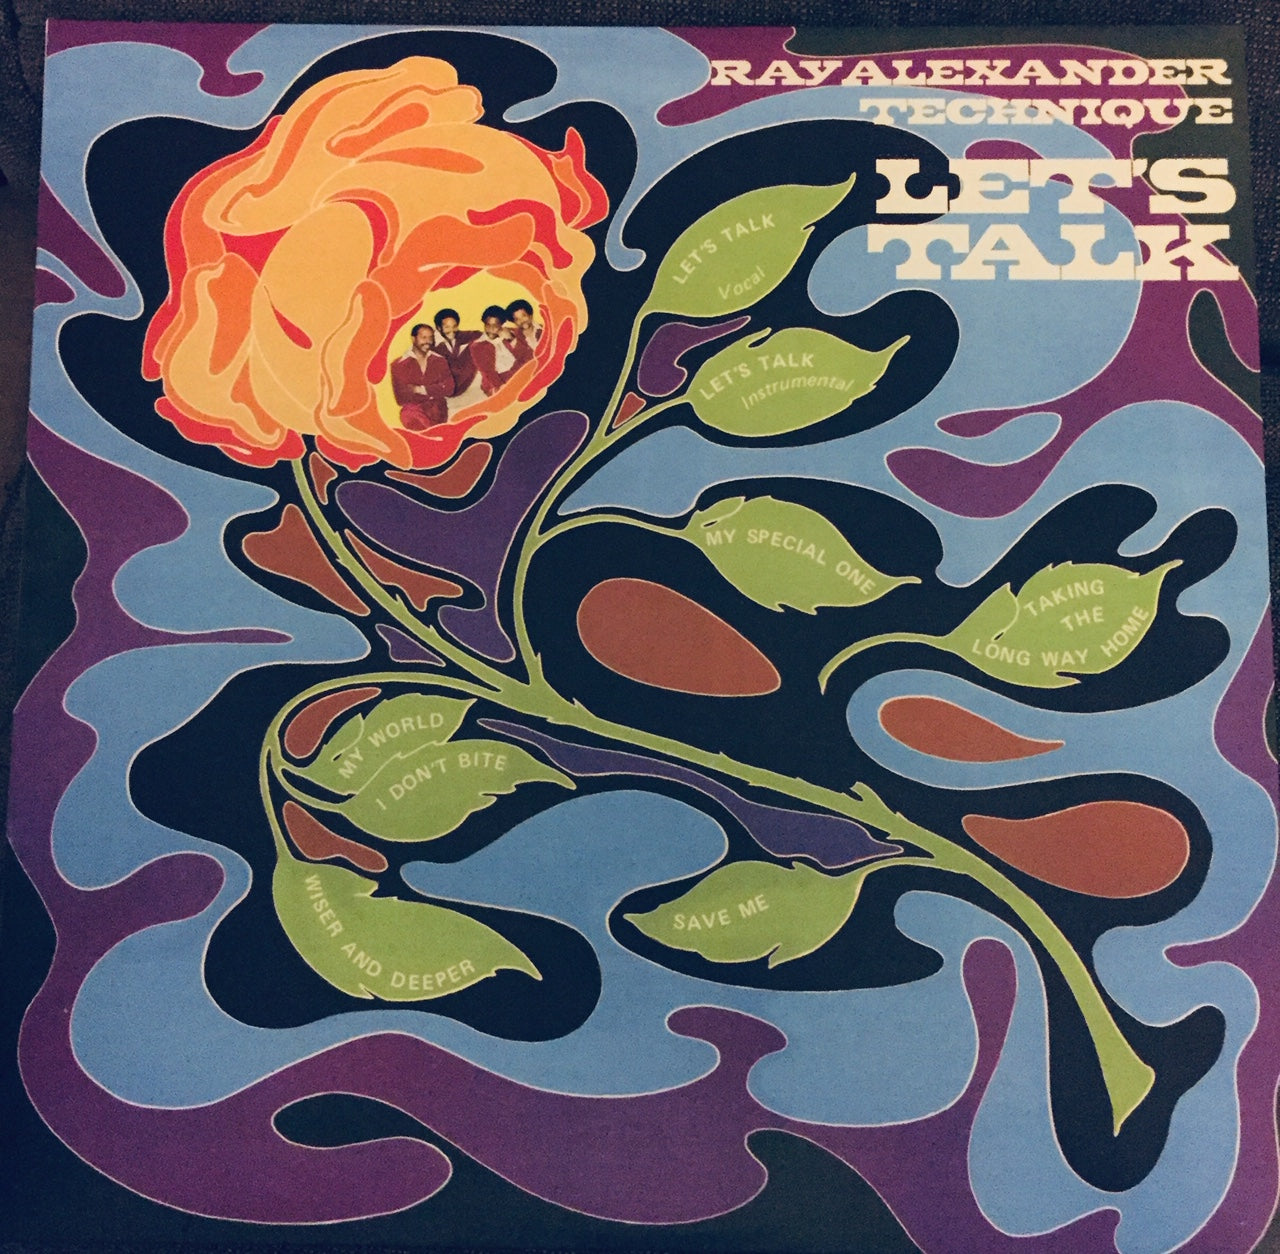 Ray Alexander Technique - Let's Talk LP